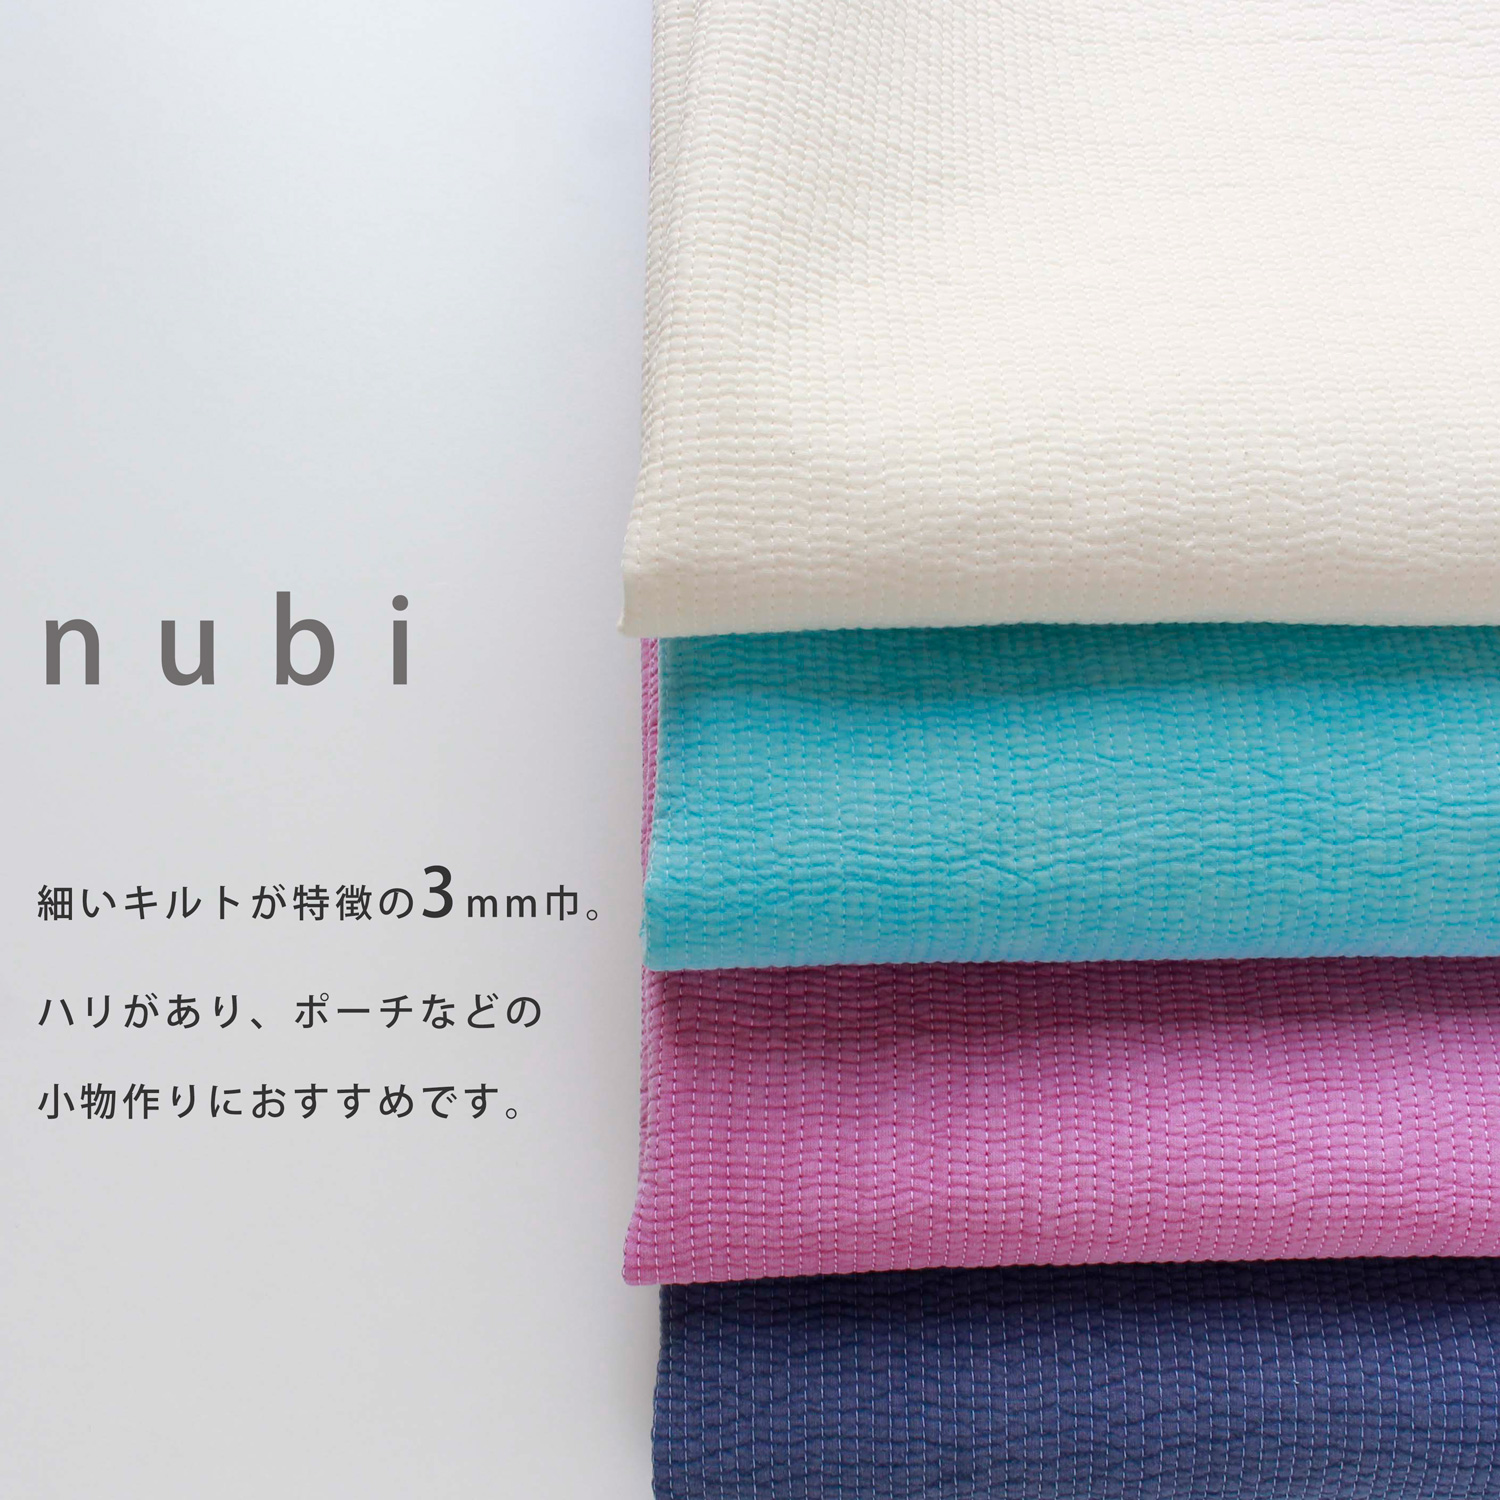 ■NBY303R nubi ヌビ 韓国伝統キルティング生地 巾3mmサイズ 原反約8m乱巻 (巻) 2